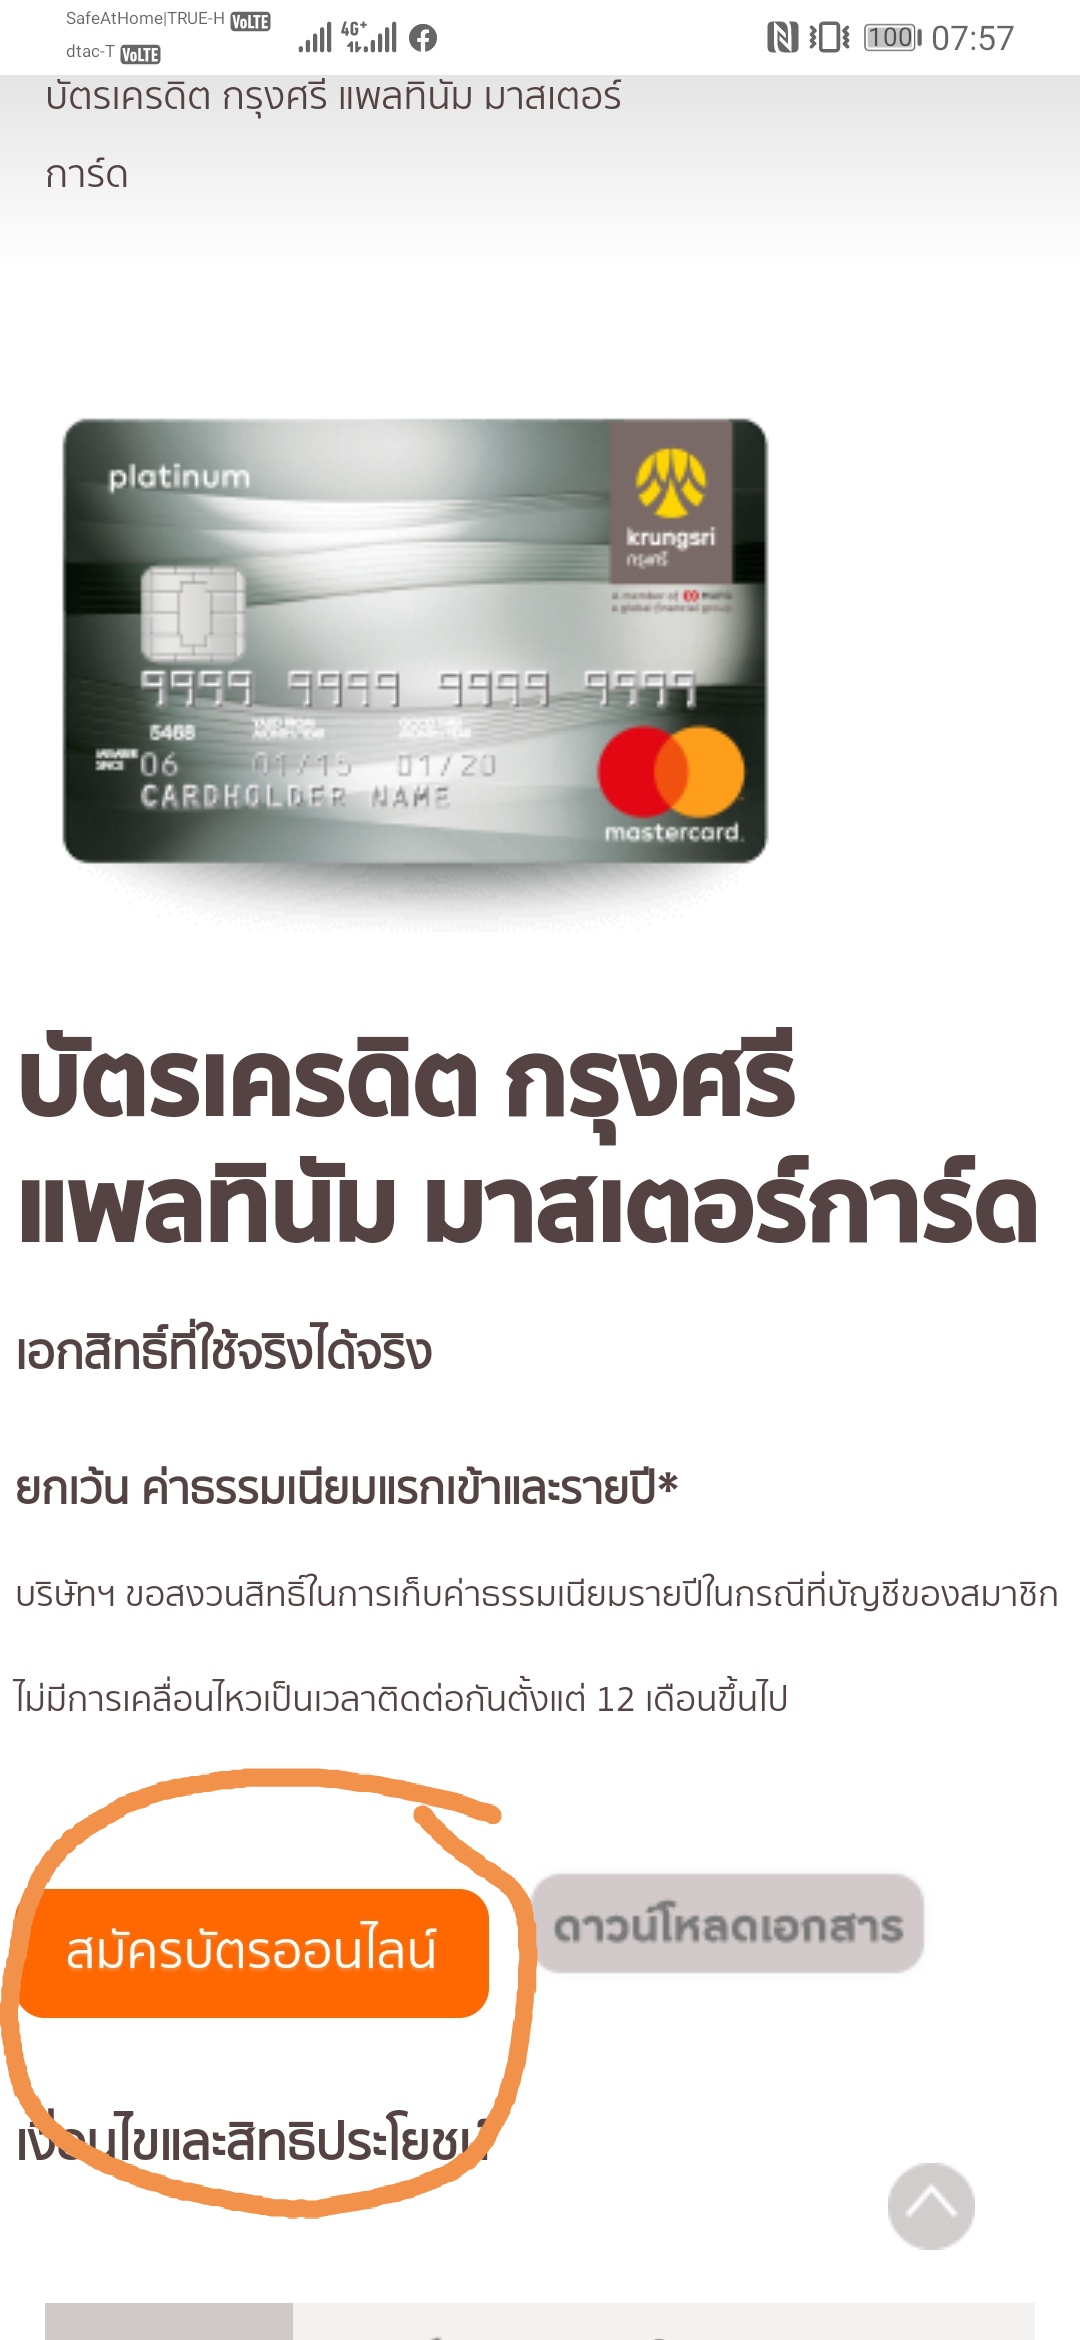 Krungsricard เปิดให้สมัครประเภทบัตร Krungsri Mastercard Platinum แล้วครับ -  Pantip